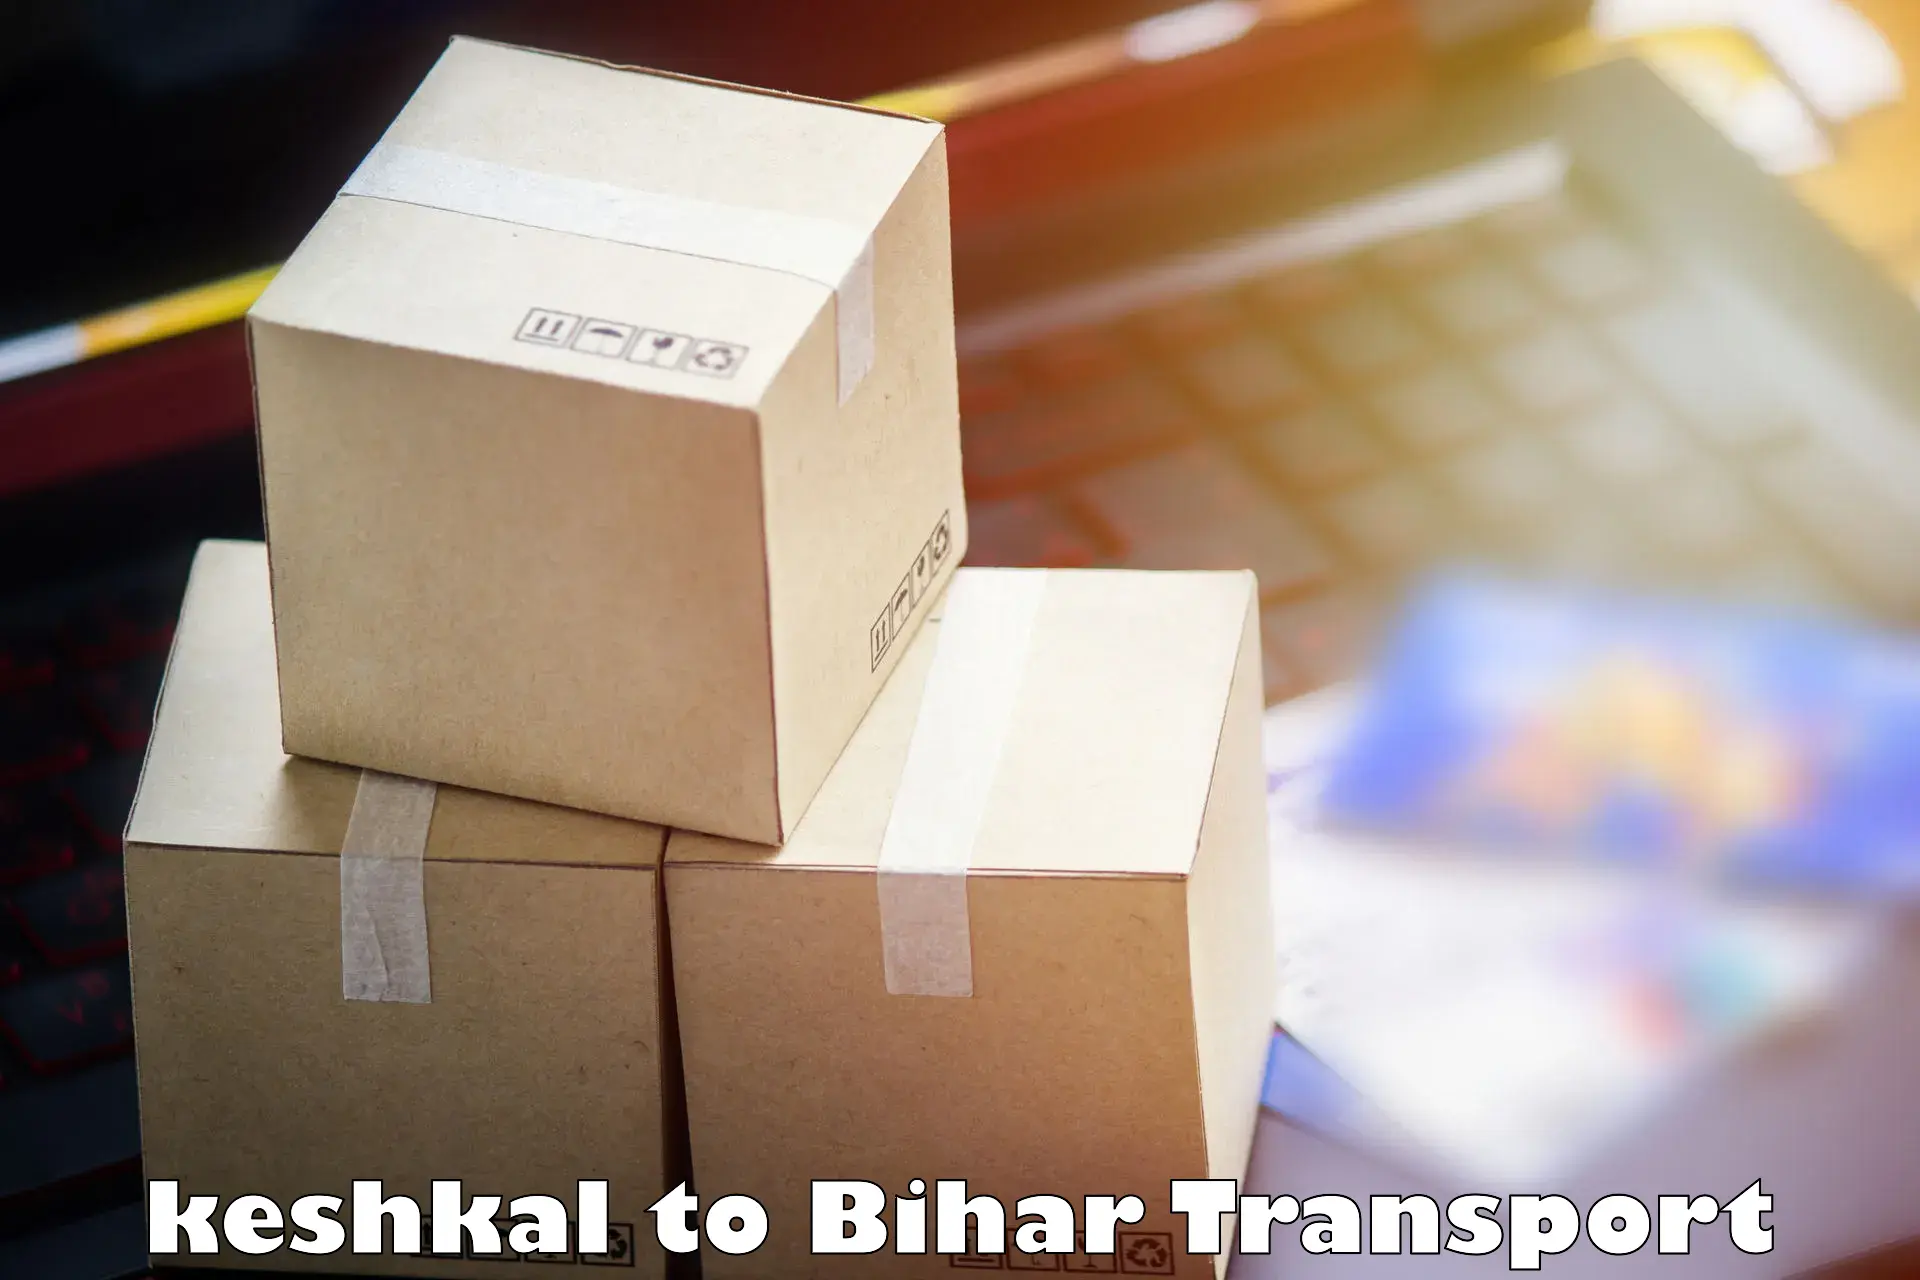 Vehicle parcel service keshkal to Biraul